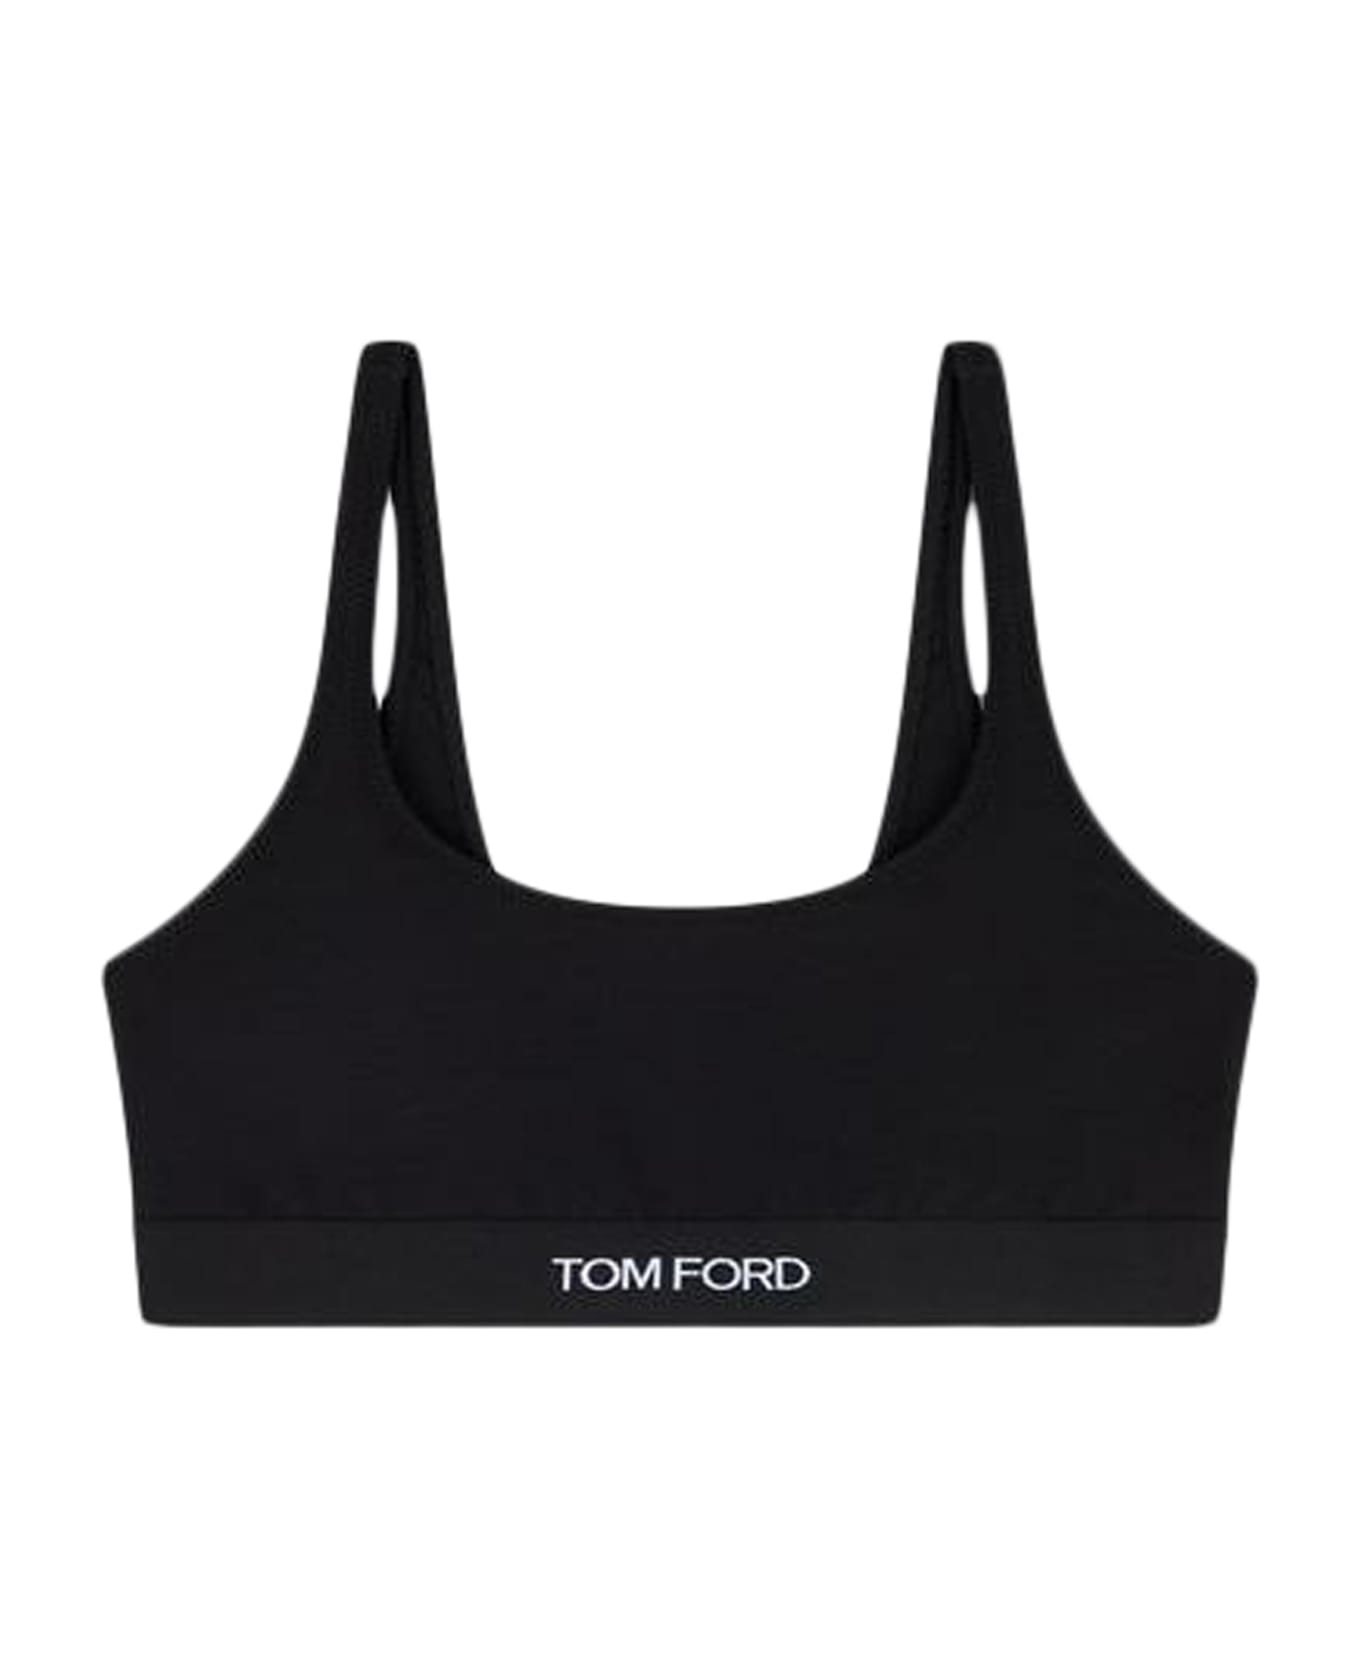 Tom Ford Modal Signature Bralette - Black